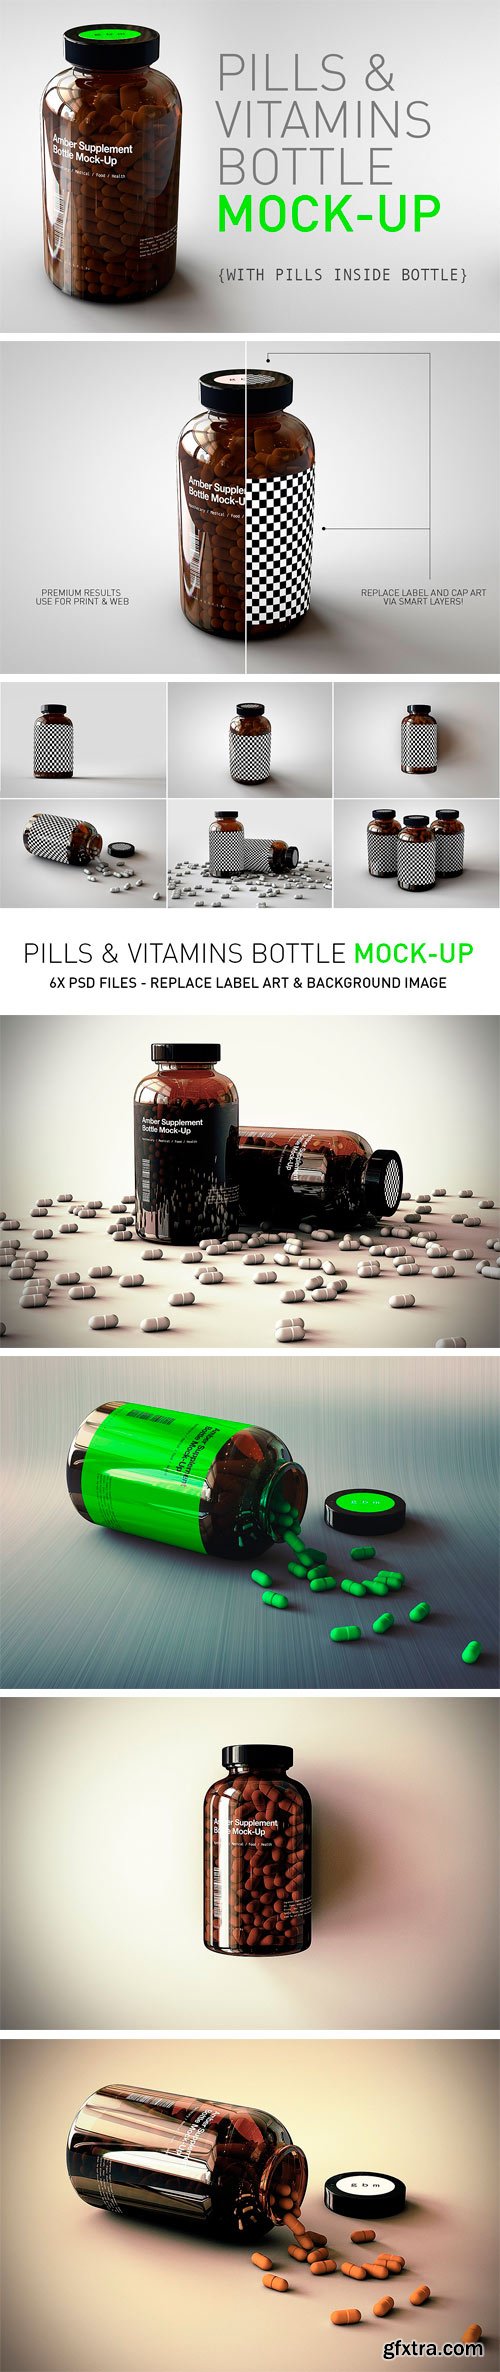 CM - Pill Bottle | Vitamin Bottle Mock-Up 1661078